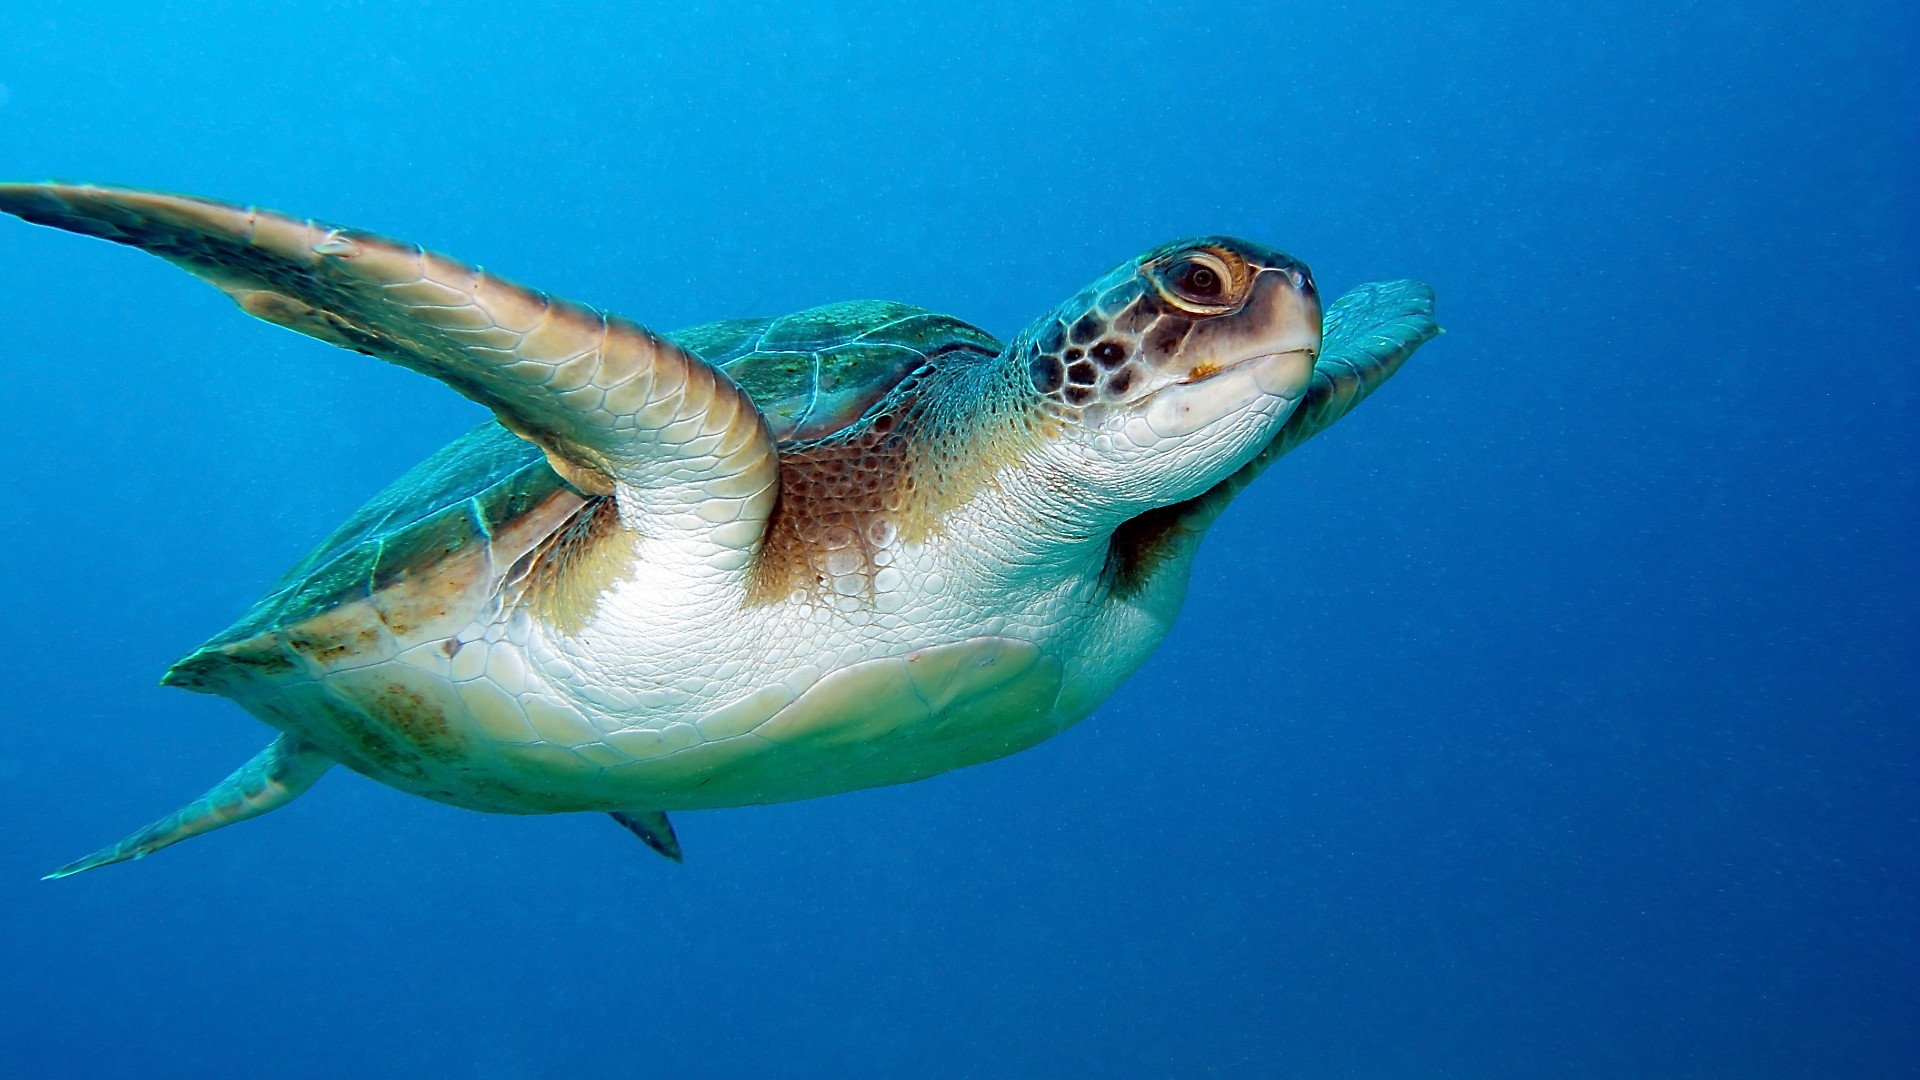 A loggerhead turtle swimming in the bright blue sea